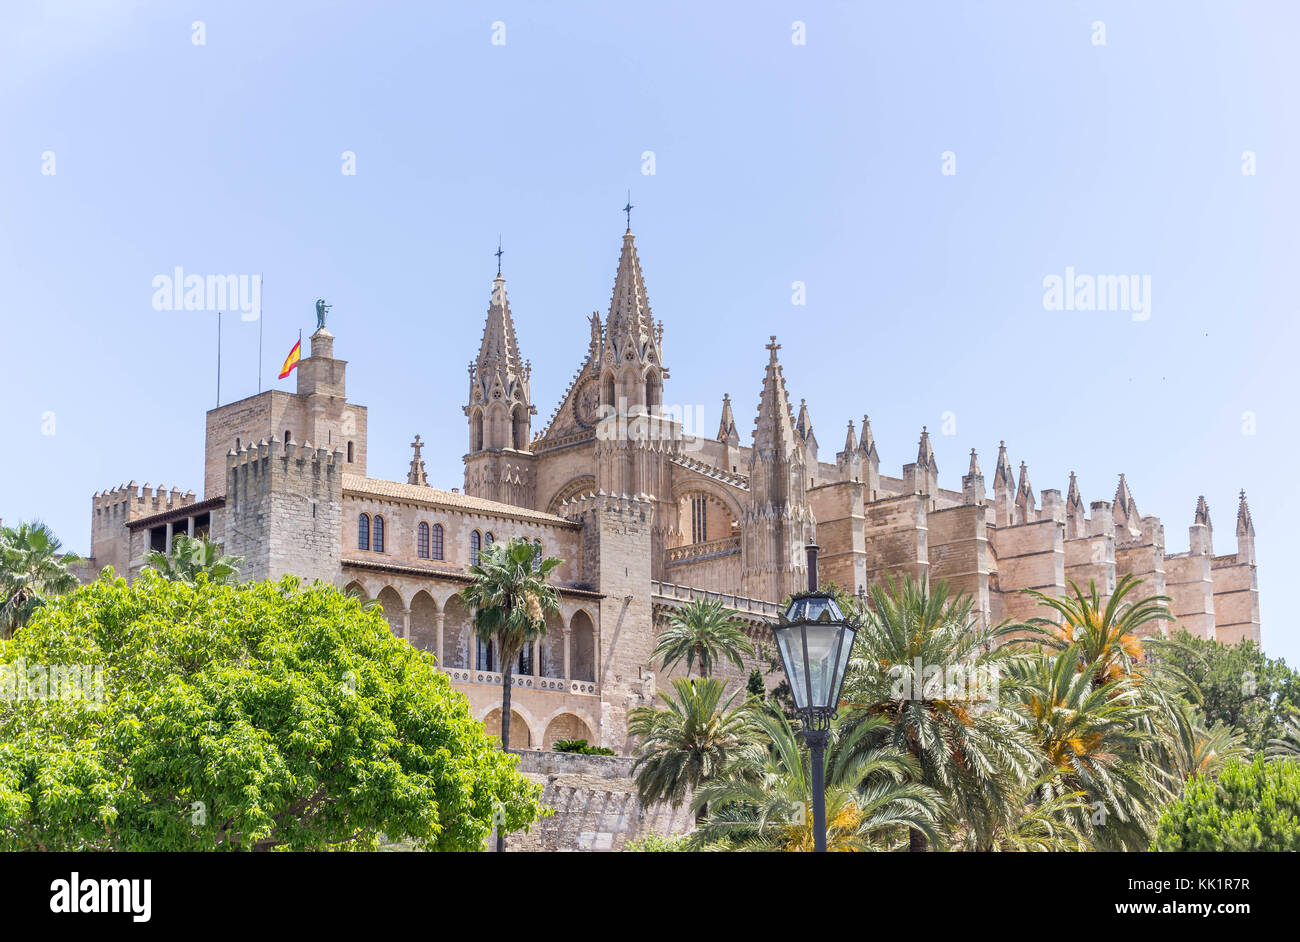 Beauty of Palma de Majorca, Spain Stock Photo